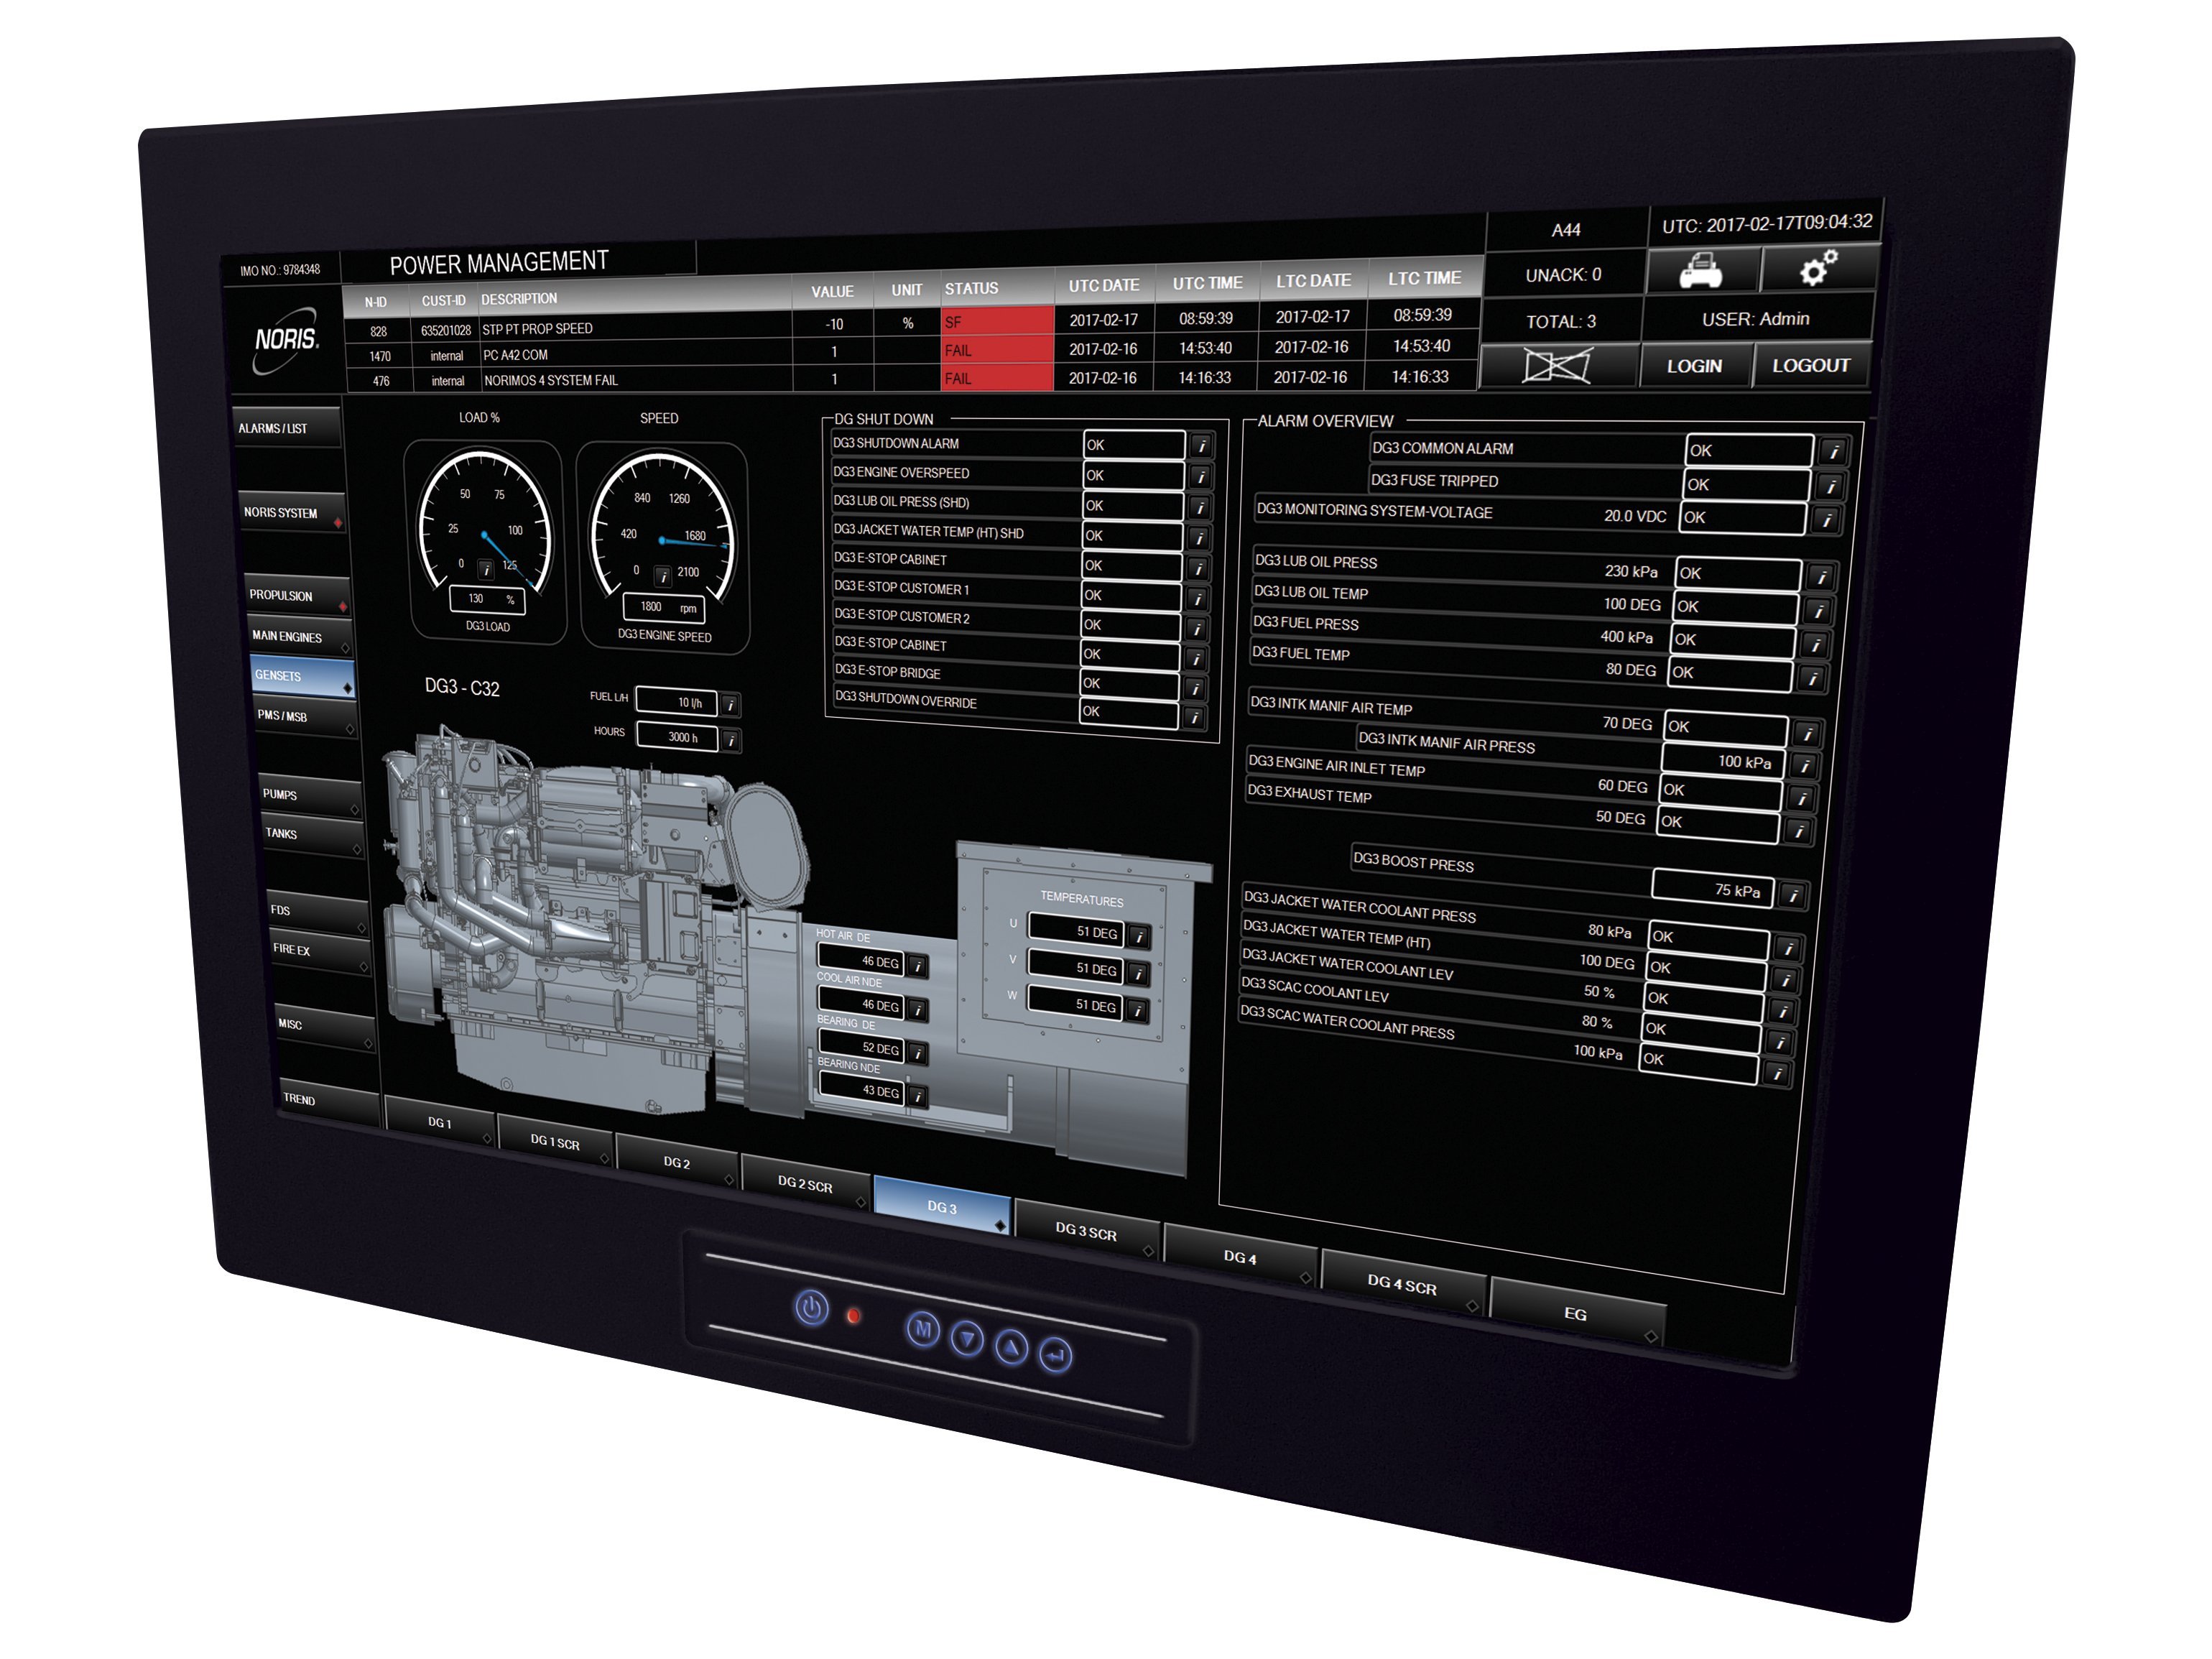 Das Bild zeigt ein großes 32" Touchscreen Display mit Power Management Software für Generatoren